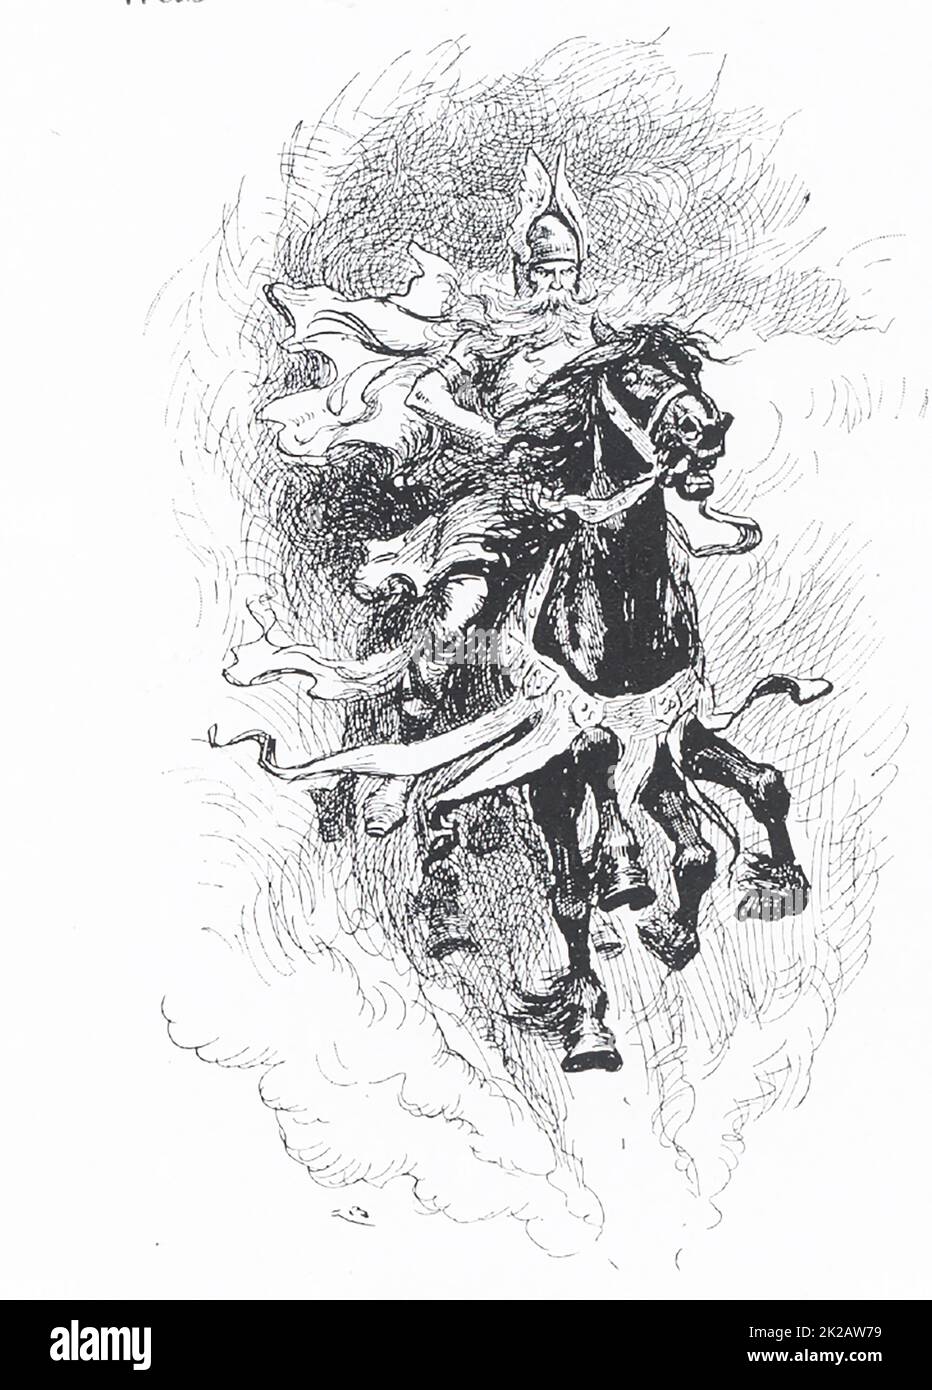 En esta ilustración de 1913, Odin ha montado a Sleipner, su caballo de ocho patas. En la mitología escandinava (nórdica), Odin era uno de los dioses principales y el gobernante de Asgard (el país o capital de los dioses nórdicos). A menudo aparece representado con dos cuervos, Hugin (también Huginn - y que significa 'pensamiento') y Munin (también Muninn y que significa 'memoria') y dos lobos, Geri y Freki (ambos que significan 'codicioso' o uno venoso'). Esta ilustración data de 1913. Foto de stock